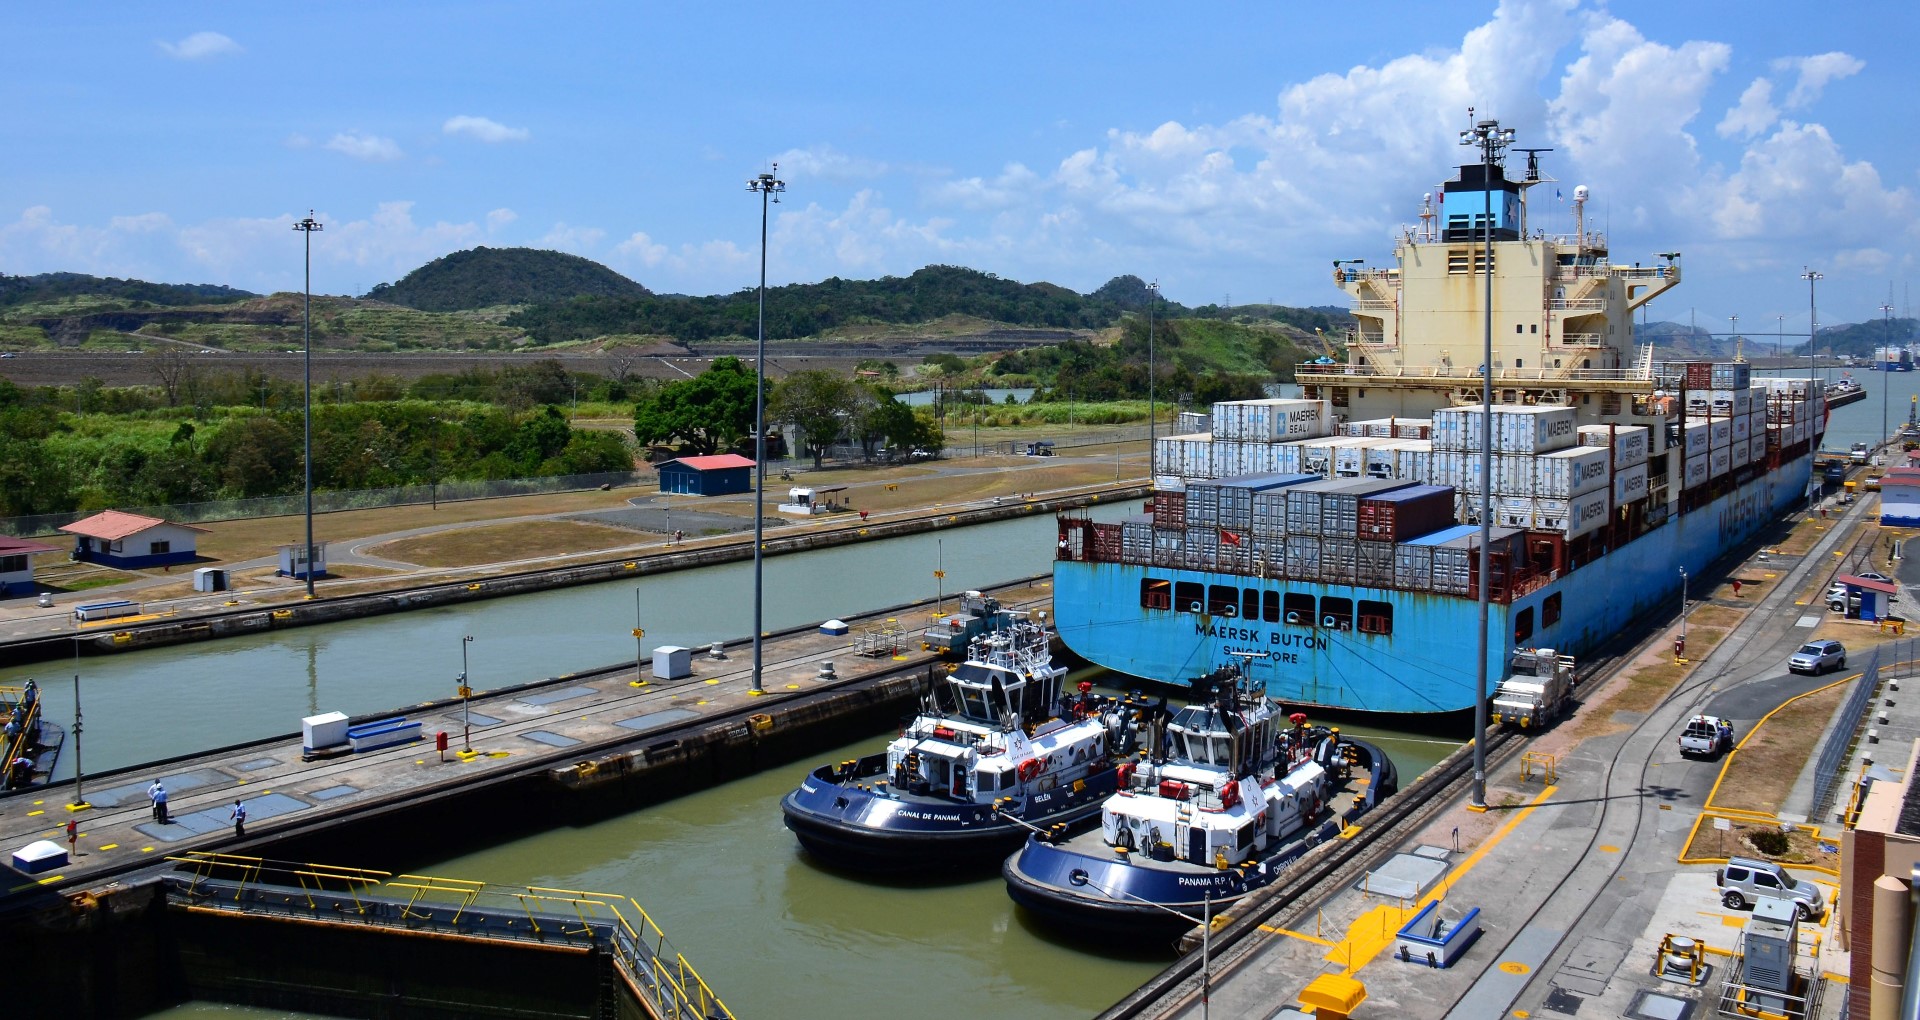 Bezoek Miraflores Locks in het Panama Kanaal tijdens uw privé rondreis door Panama